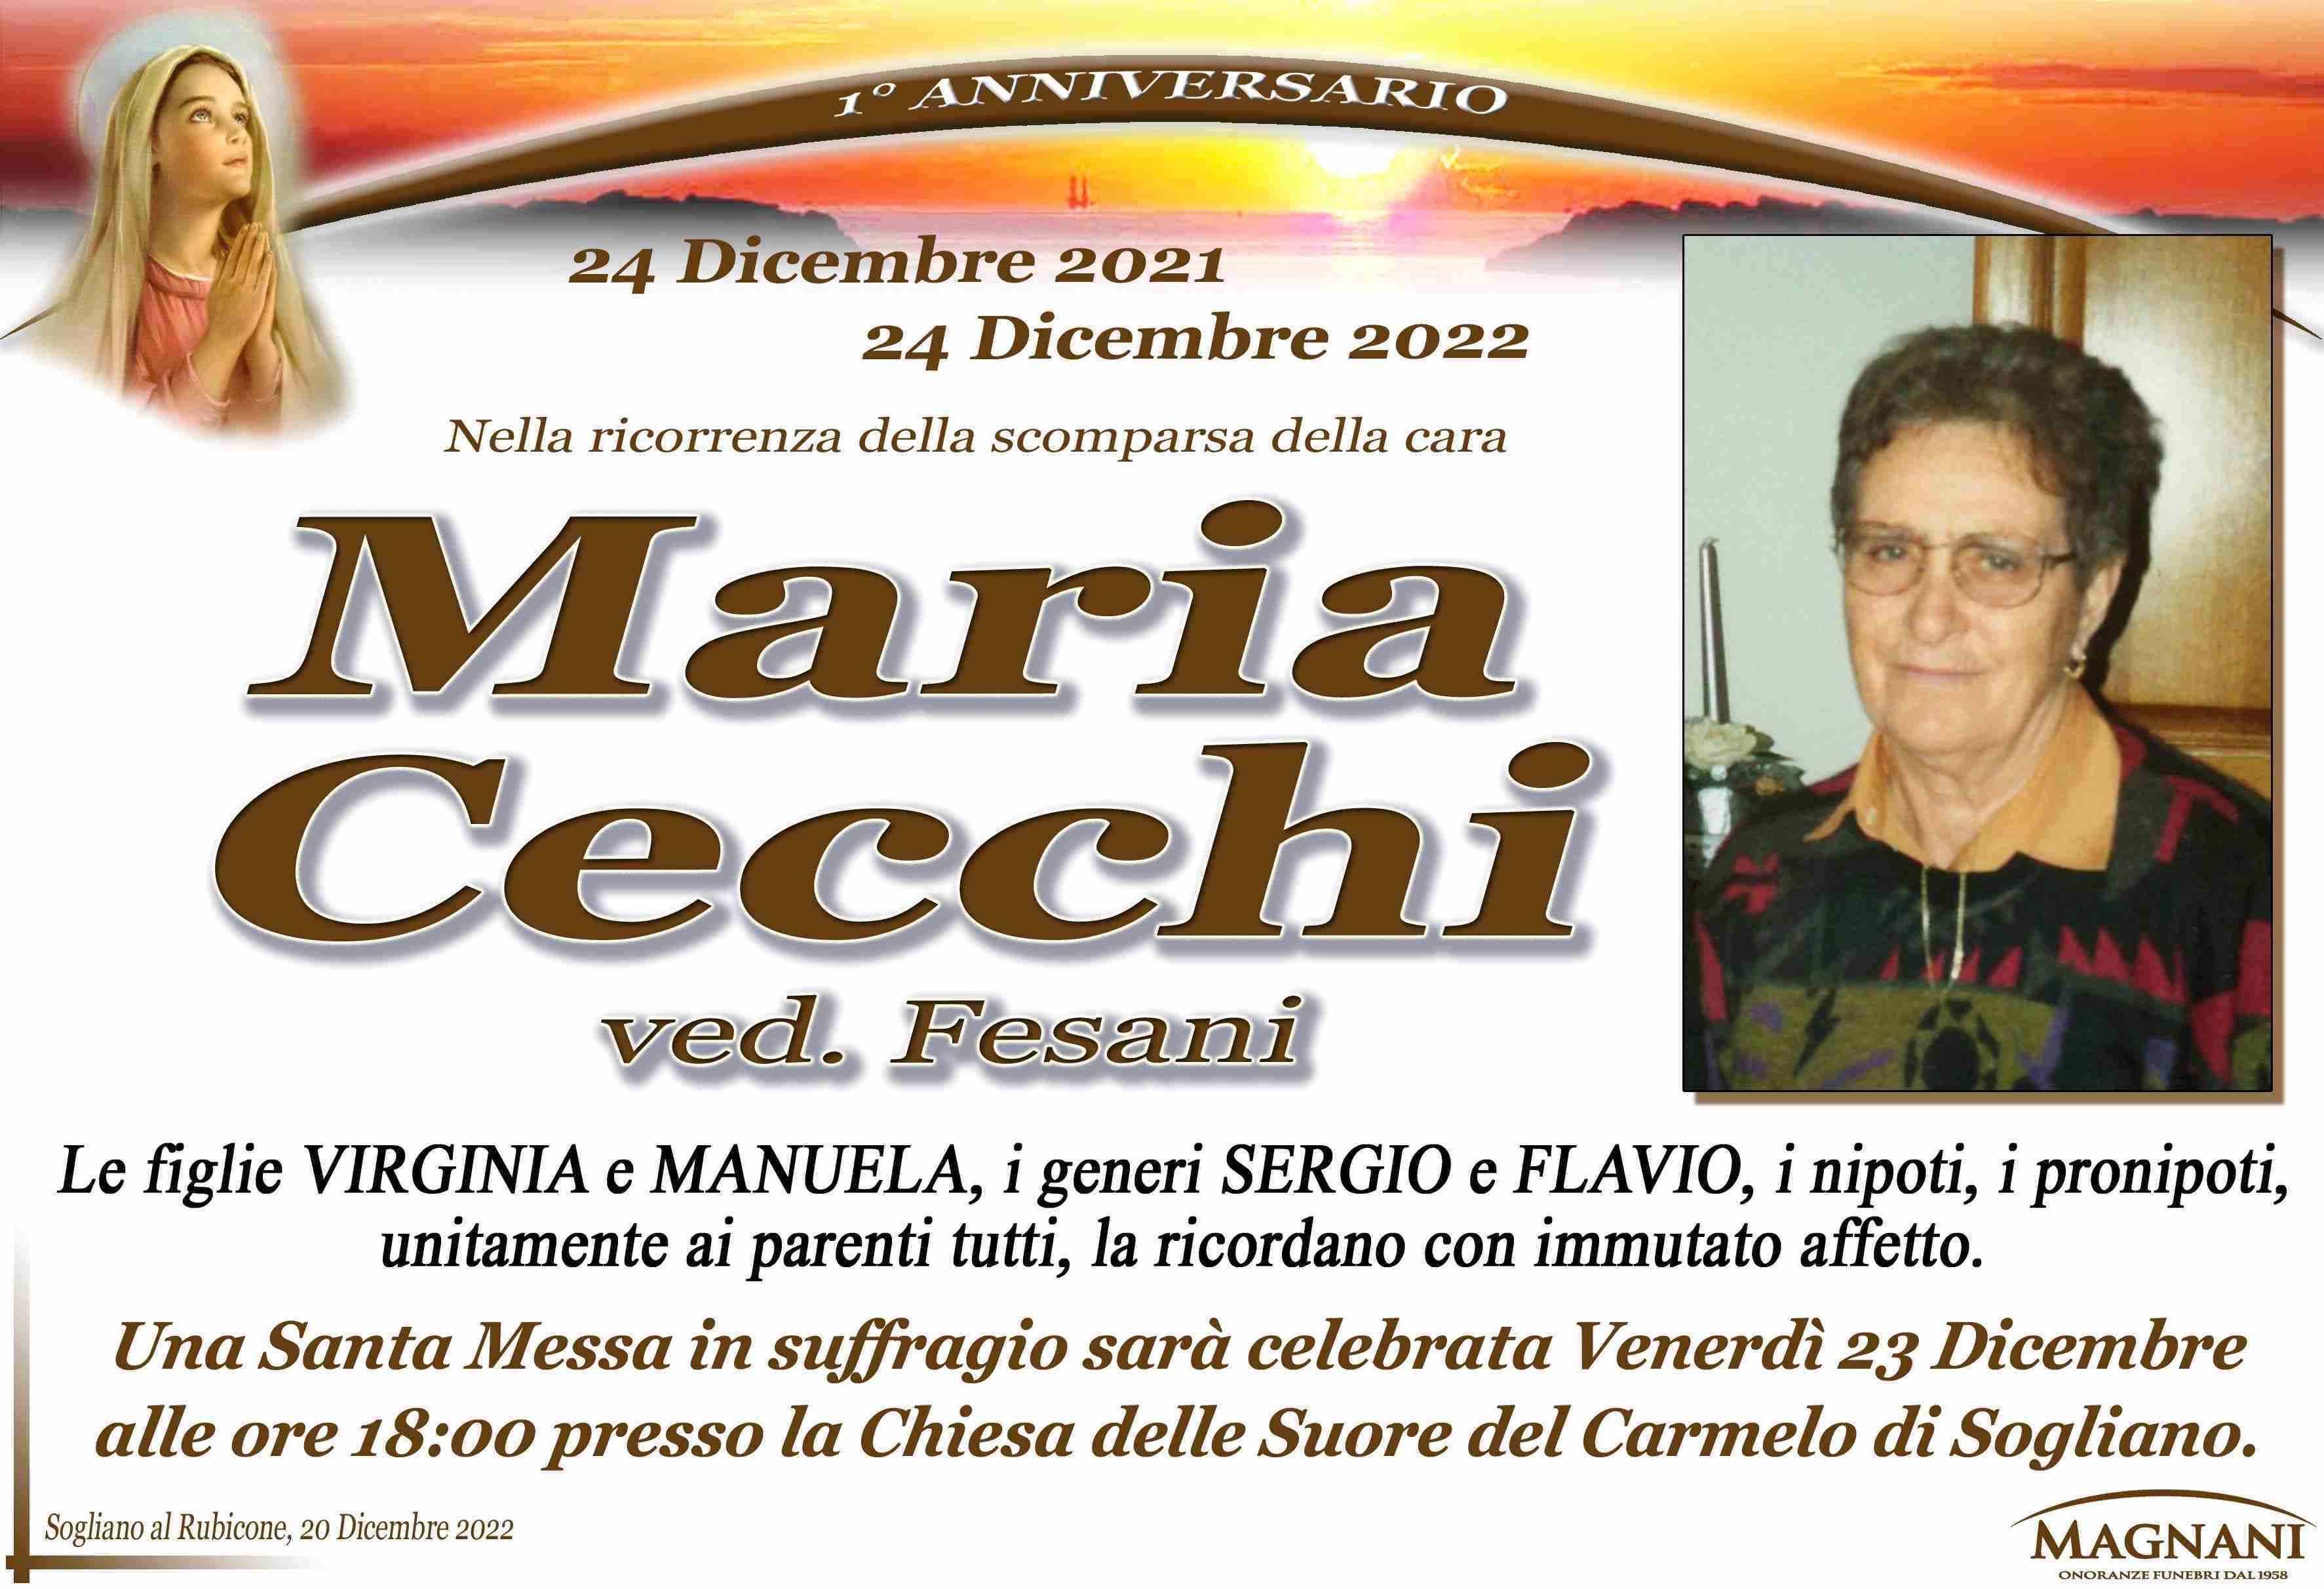 Maria Cecchi